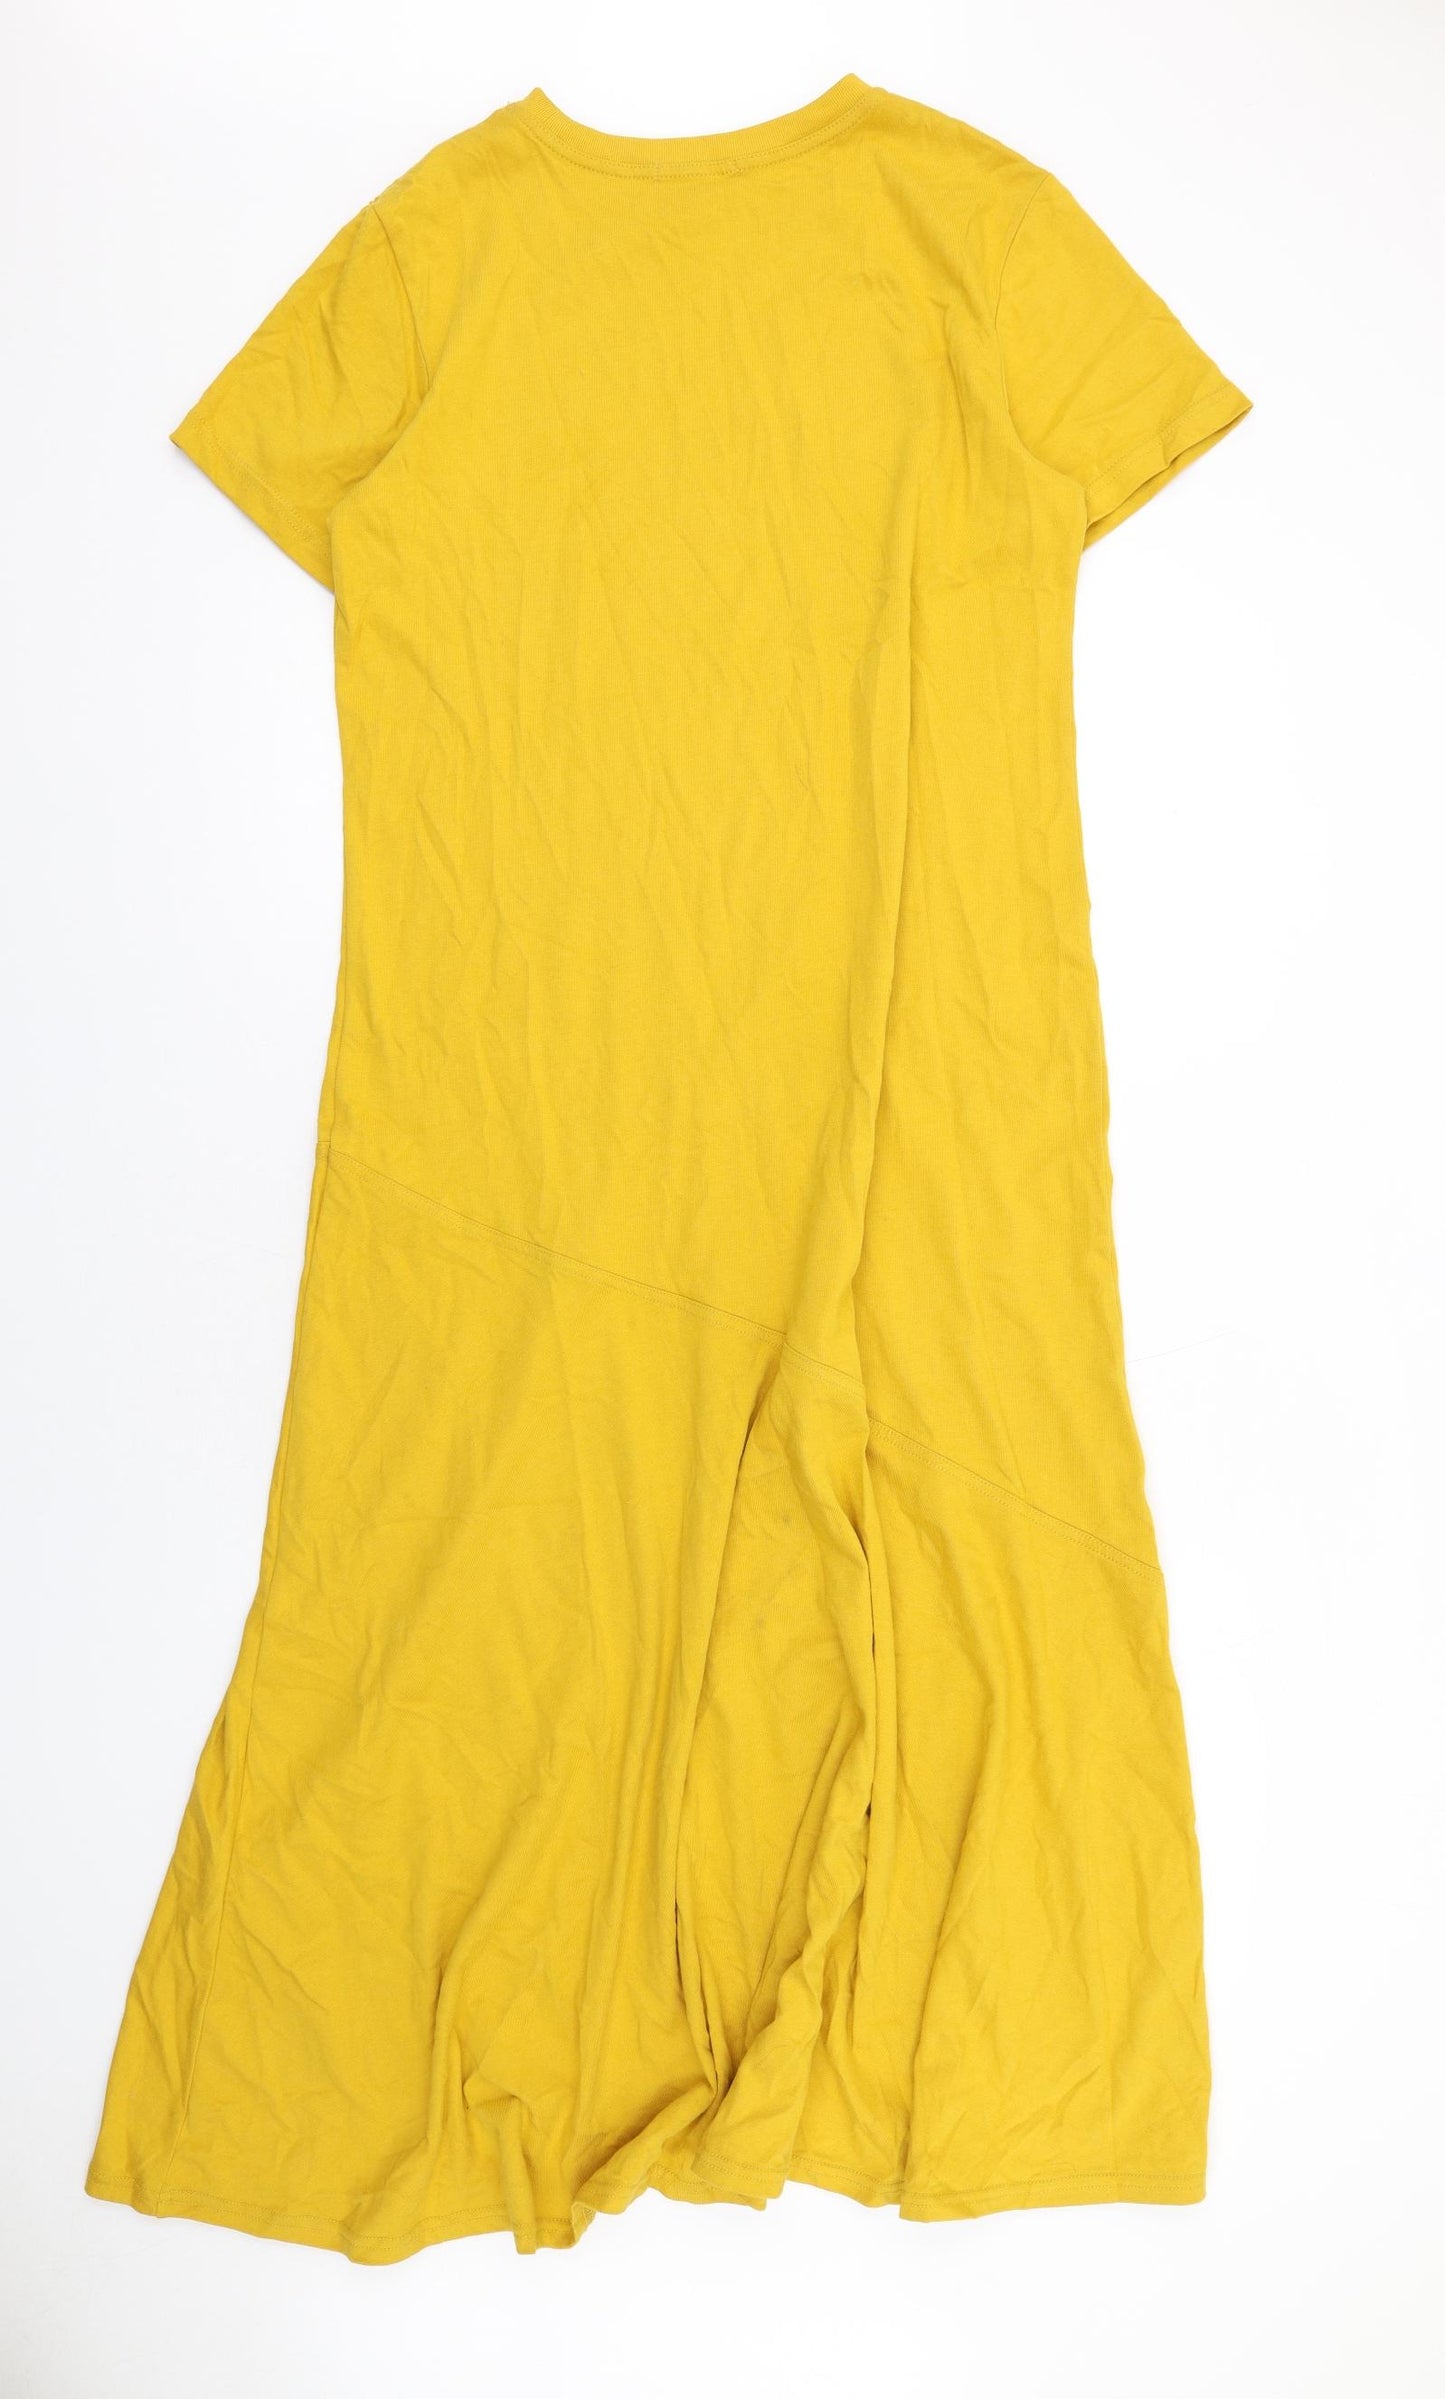 Uniqlo Womens Yellow Cotton Maxi Size M Crew Neck Pullover